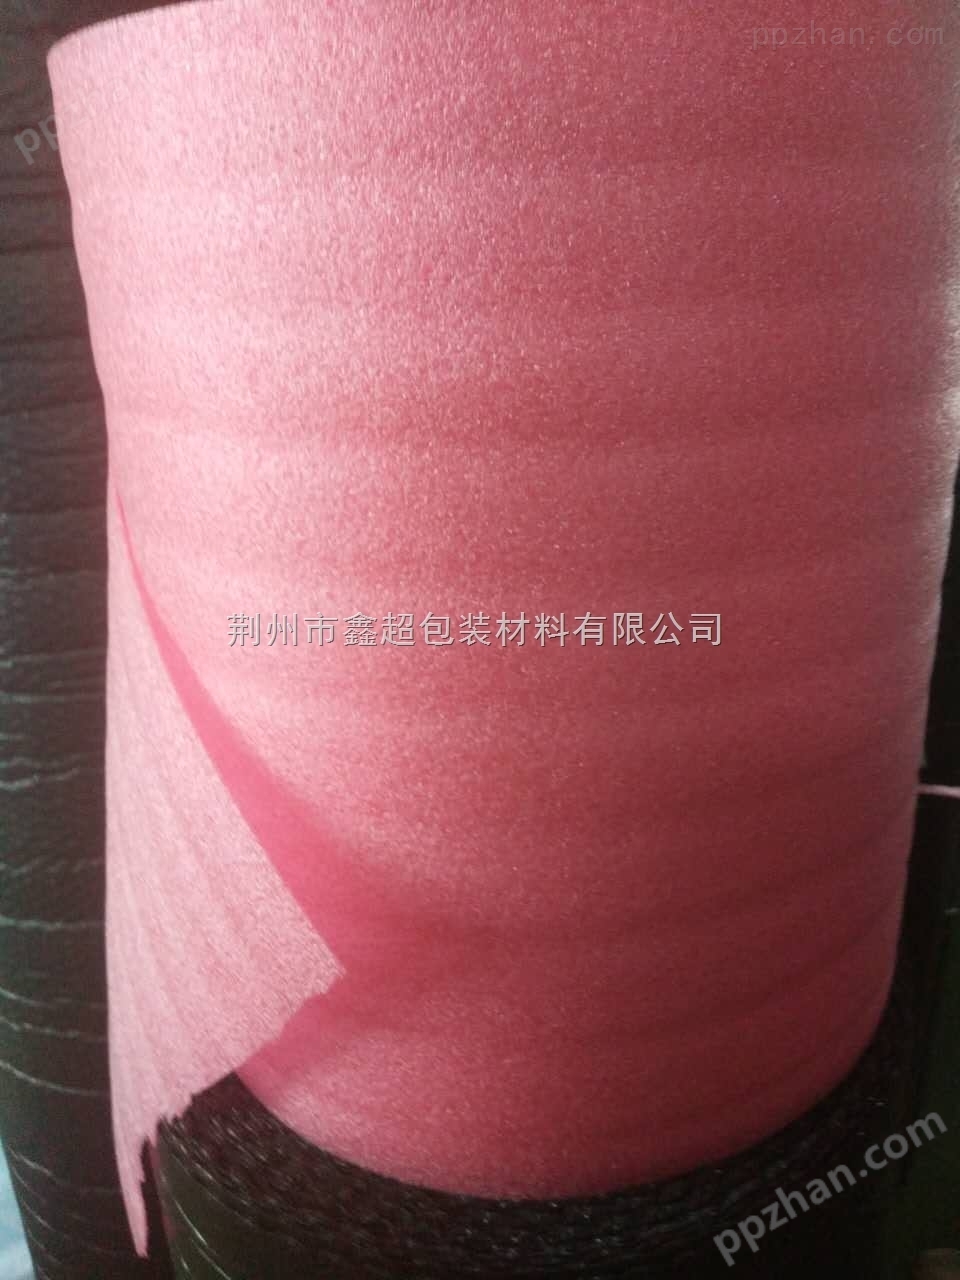 粉色珍珠棉可覆膜价格便宜环保无味扬州珍珠棉